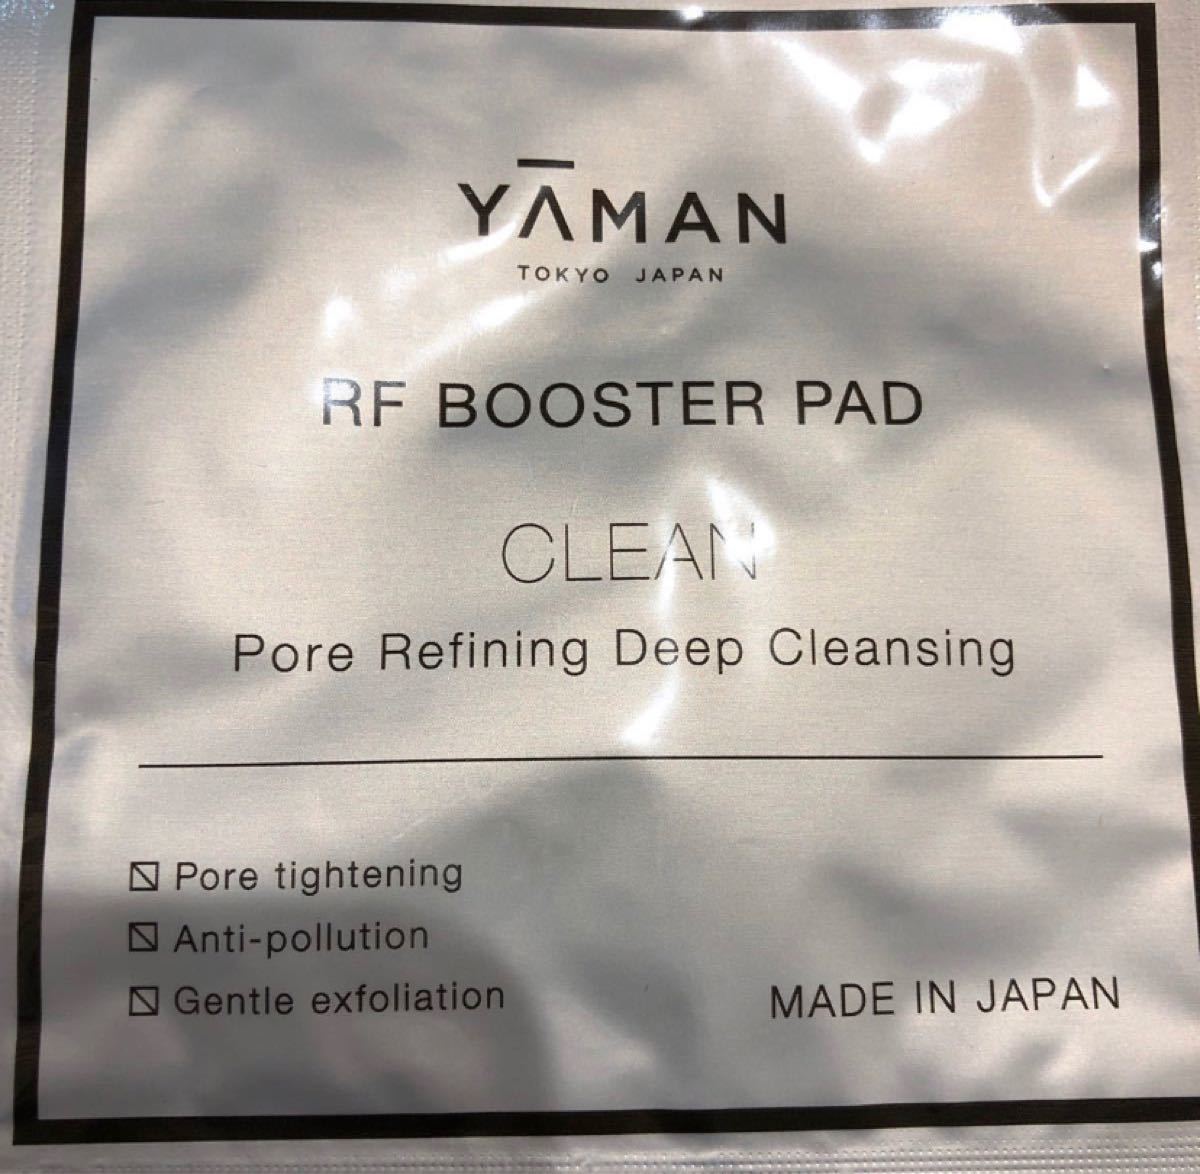 ヤーマン　RFブースターパッド　毛穴ディープクレンズ15包セット＆クリアディープモイスチャー15包セット